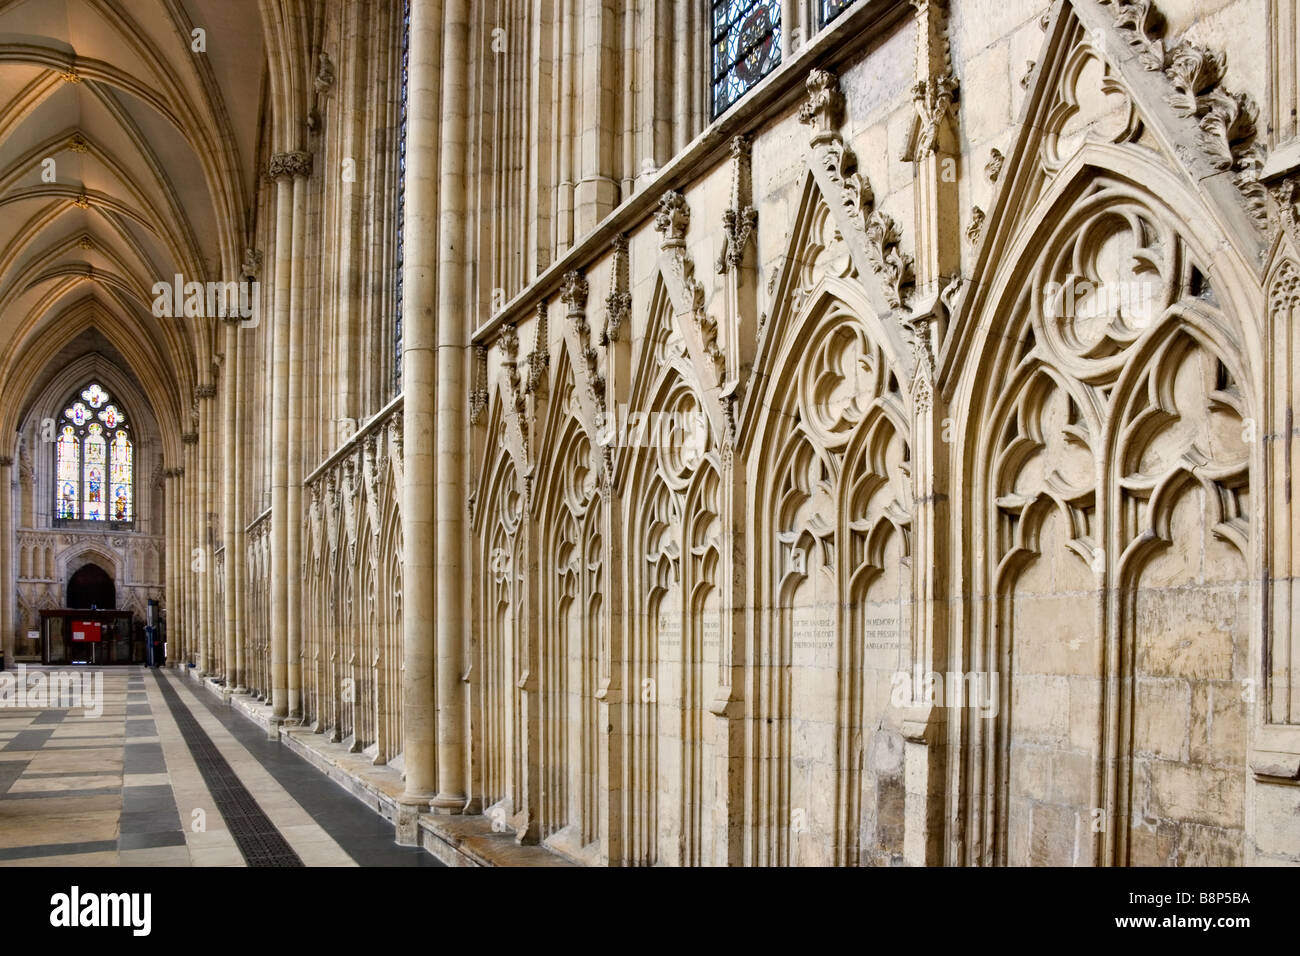 Una vista interior de la Catedral de York, York, Inglaterra Foto de stock